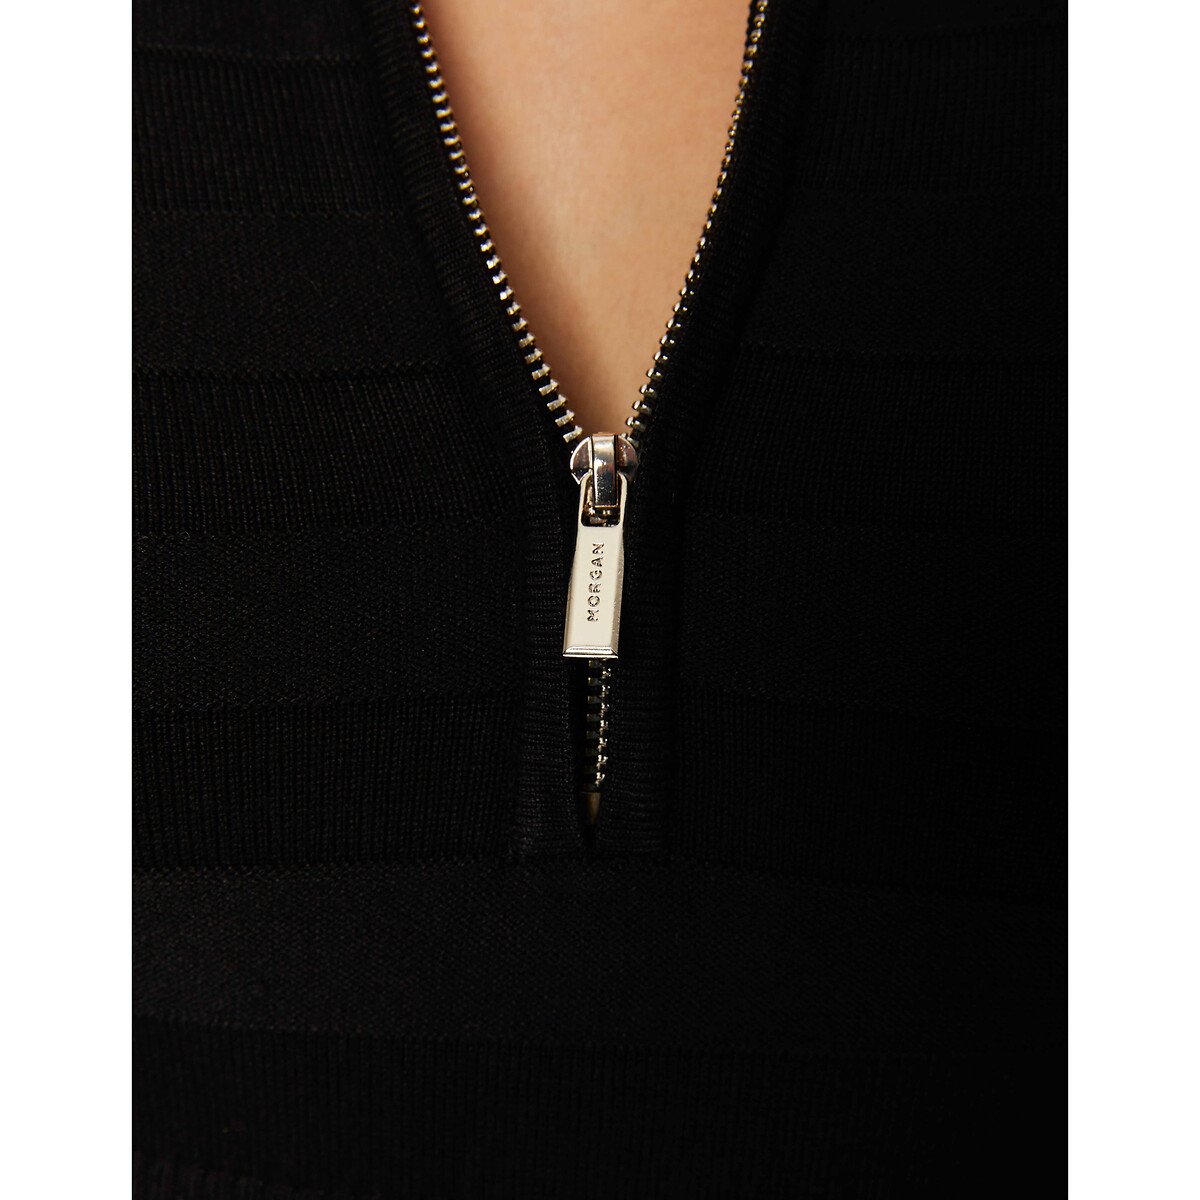 Пуловер MORGAN С воротником-стойкой на молнии XS черный, размер XS - фото 3